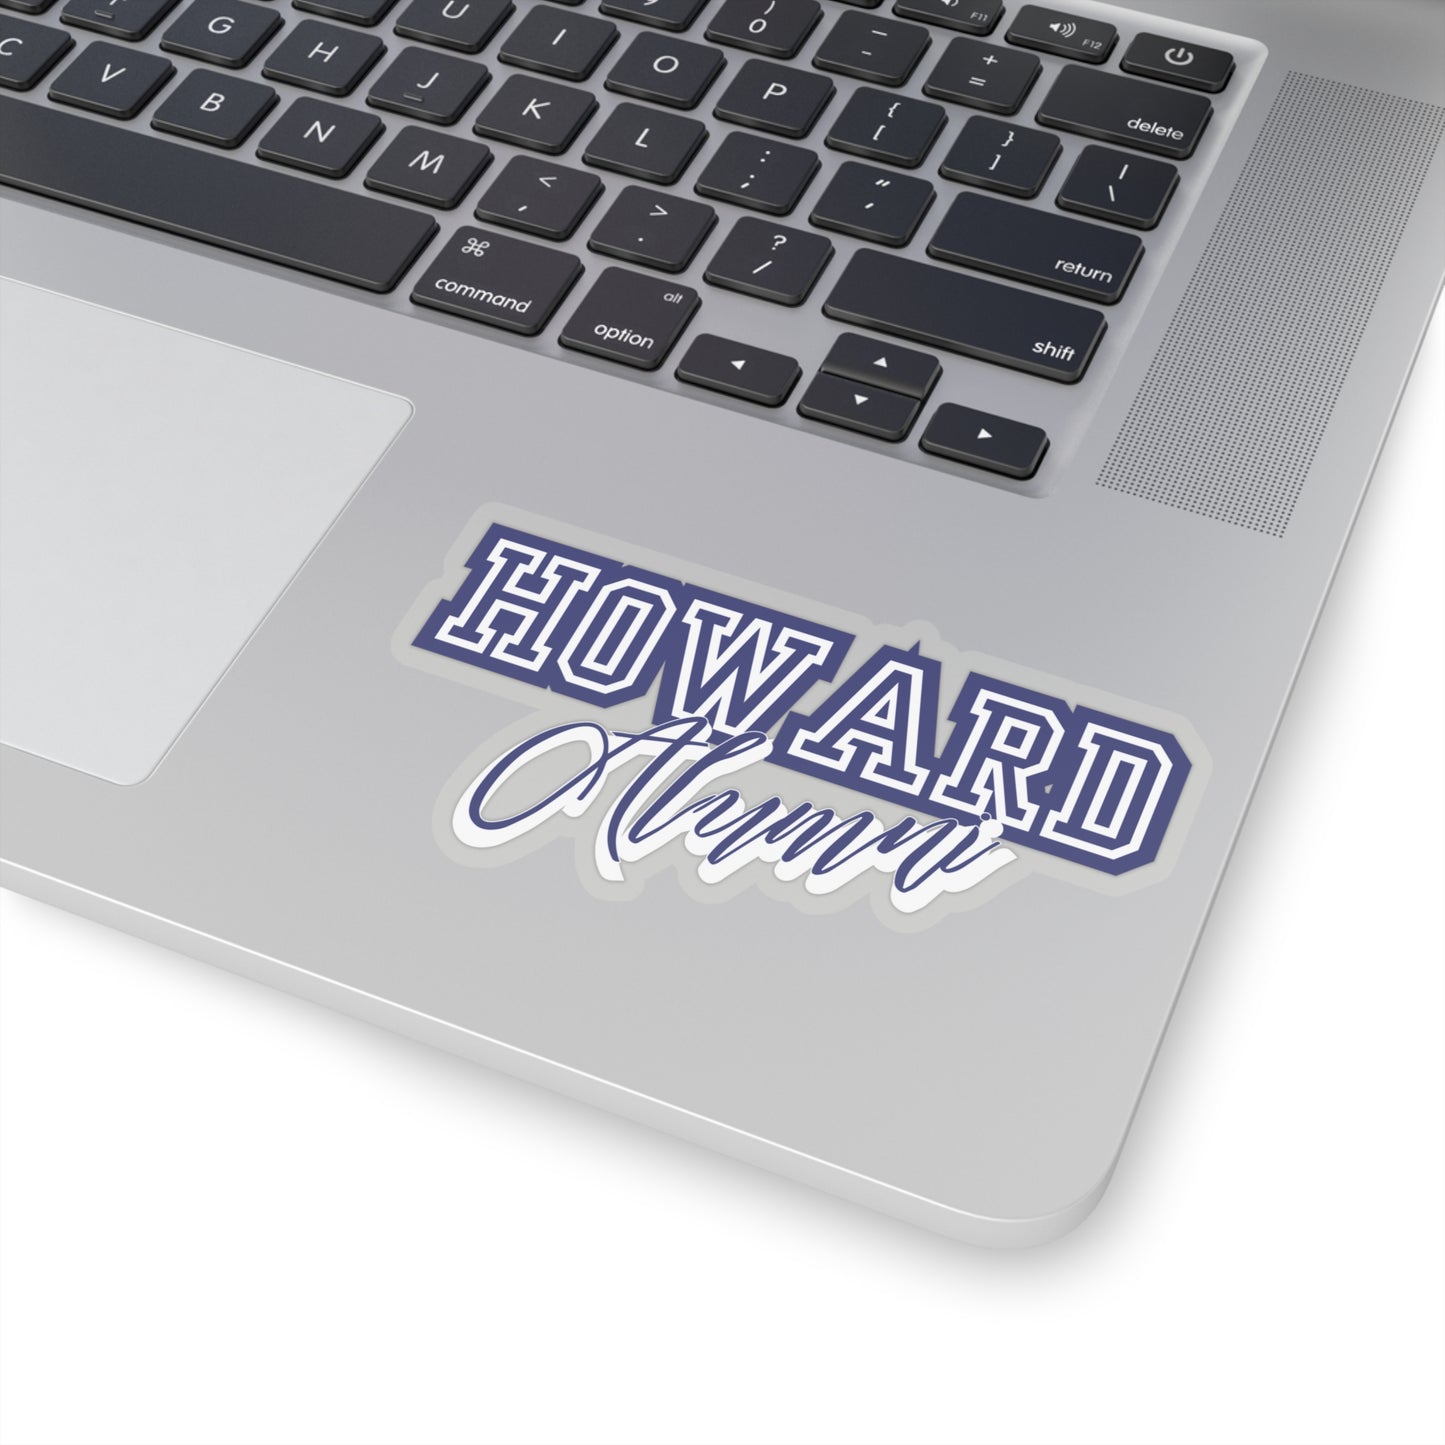 Howard Alumni Kiss-Cut Stickers